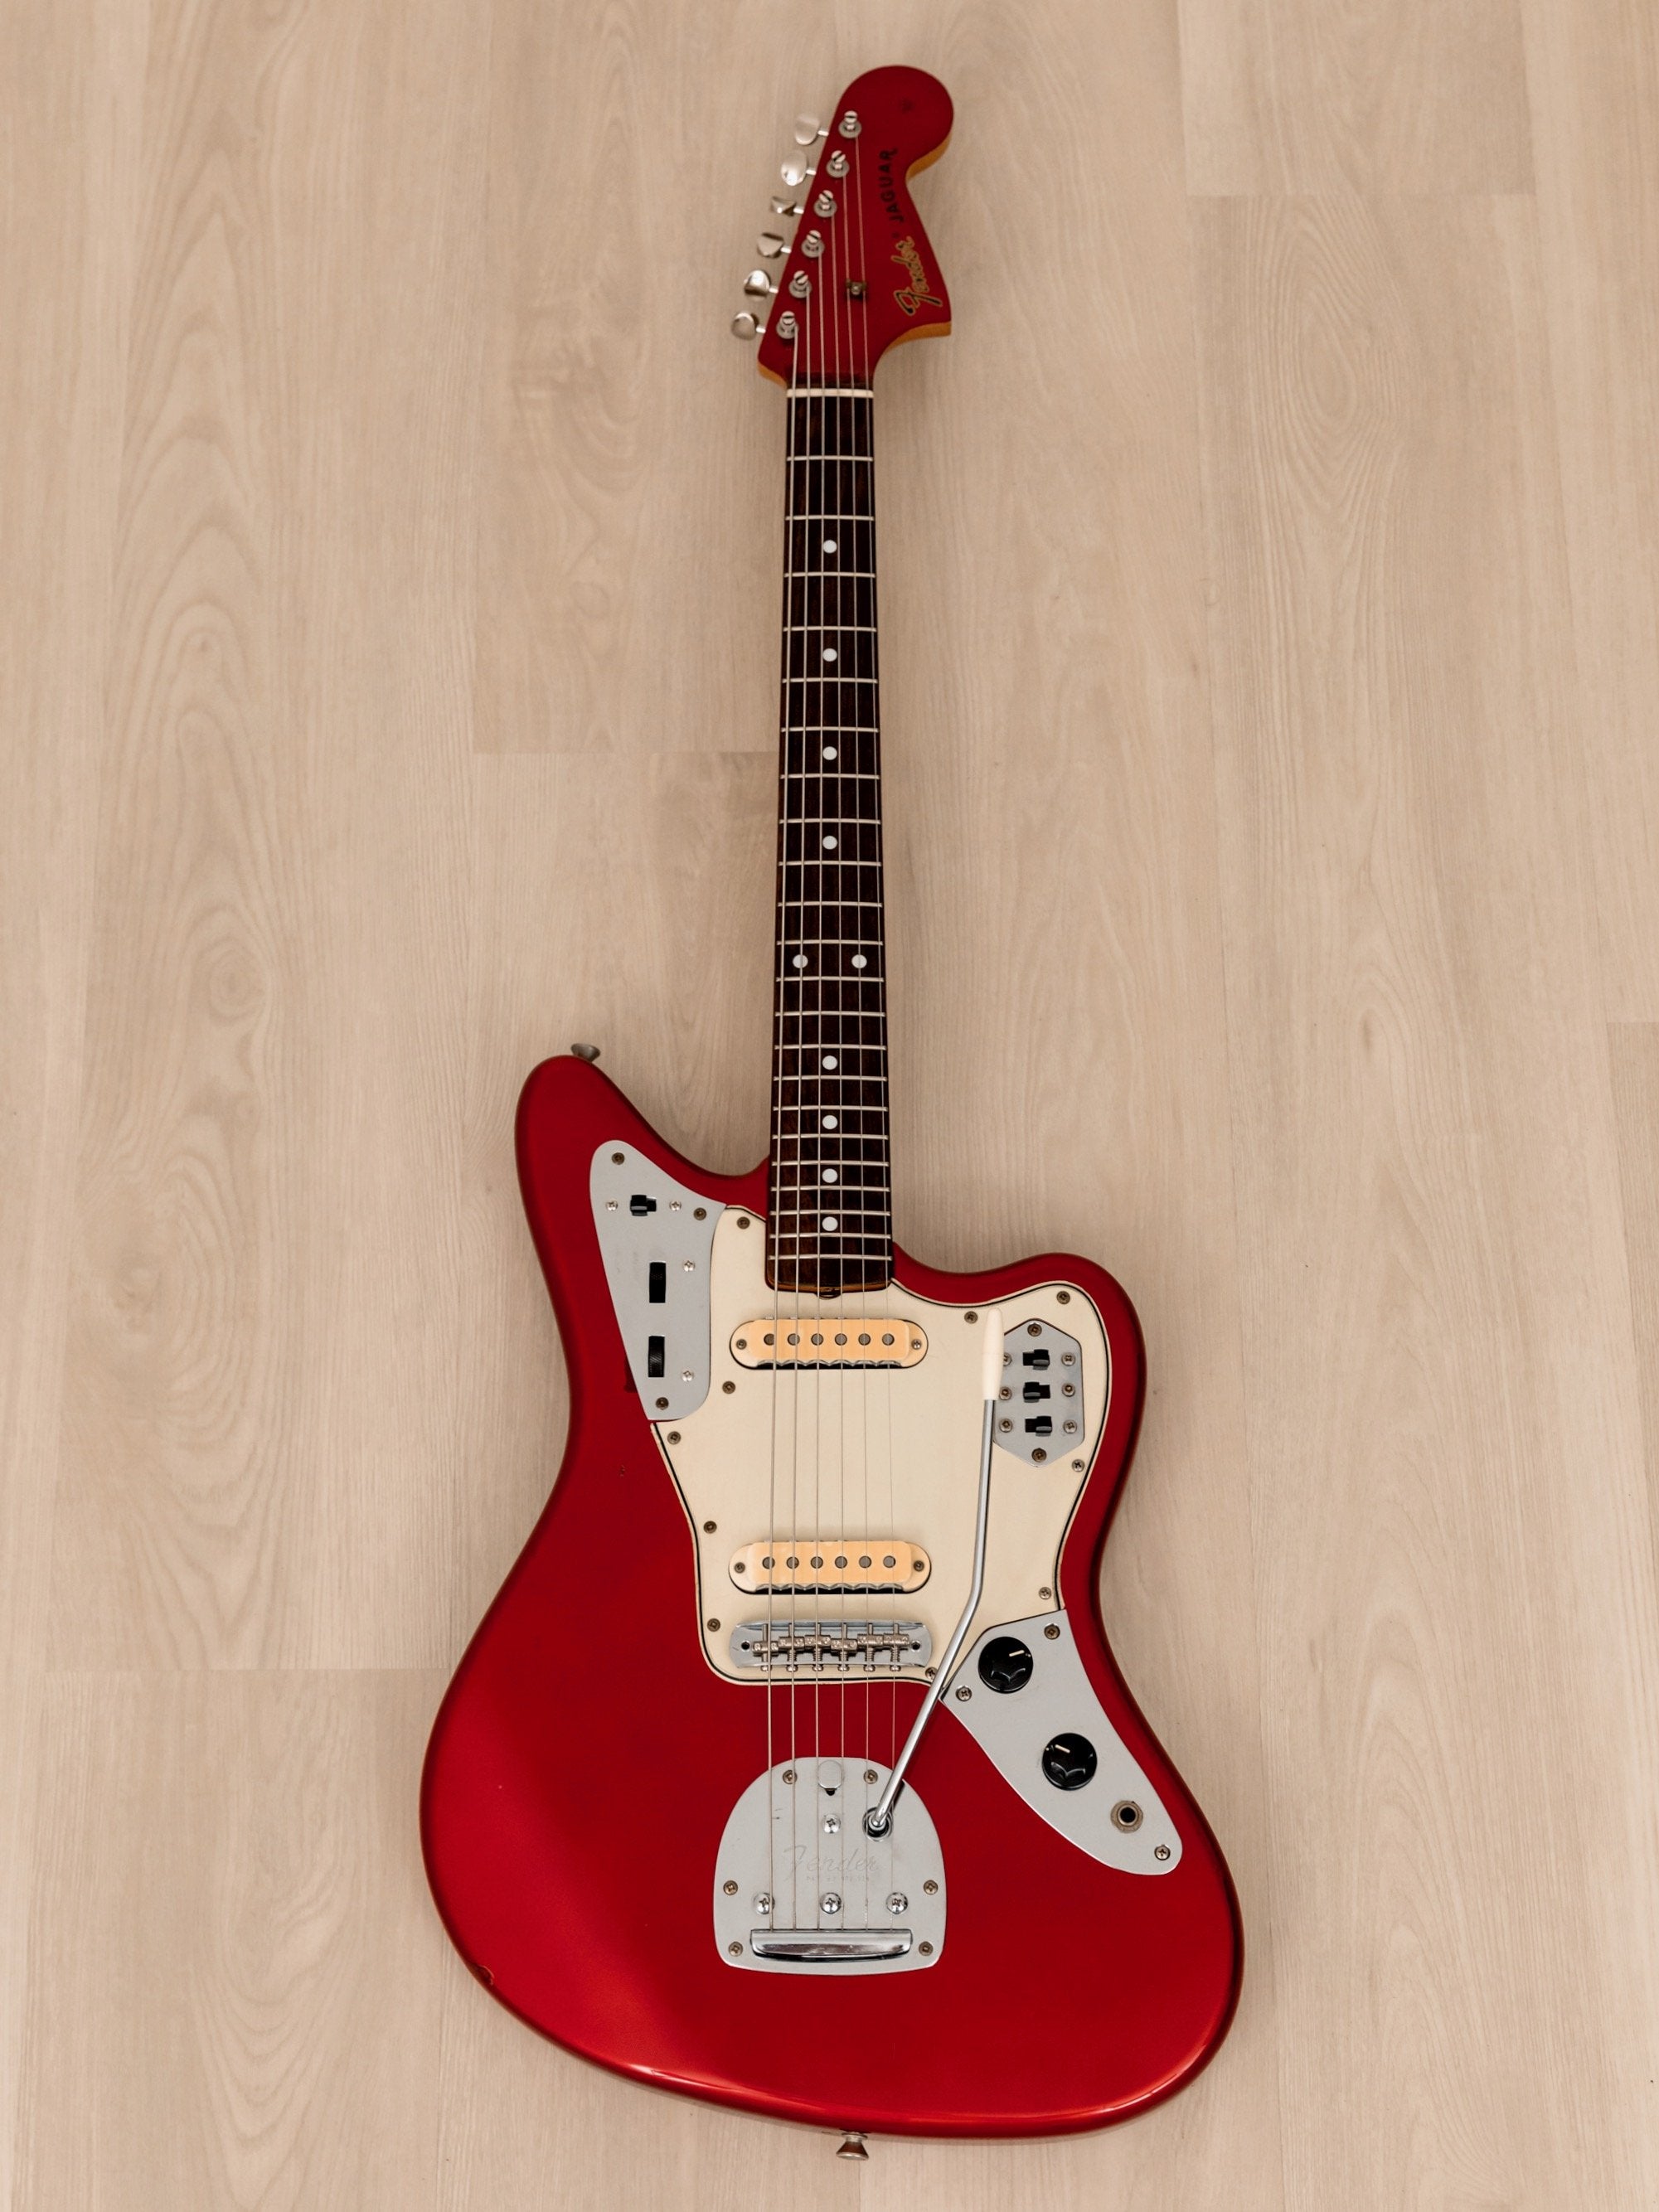 1995 Fender Jaguar '62 Vintage Reissue Offset Guitar JG66-85 Candy Apple Red w/ Headstock, Japan MIJ